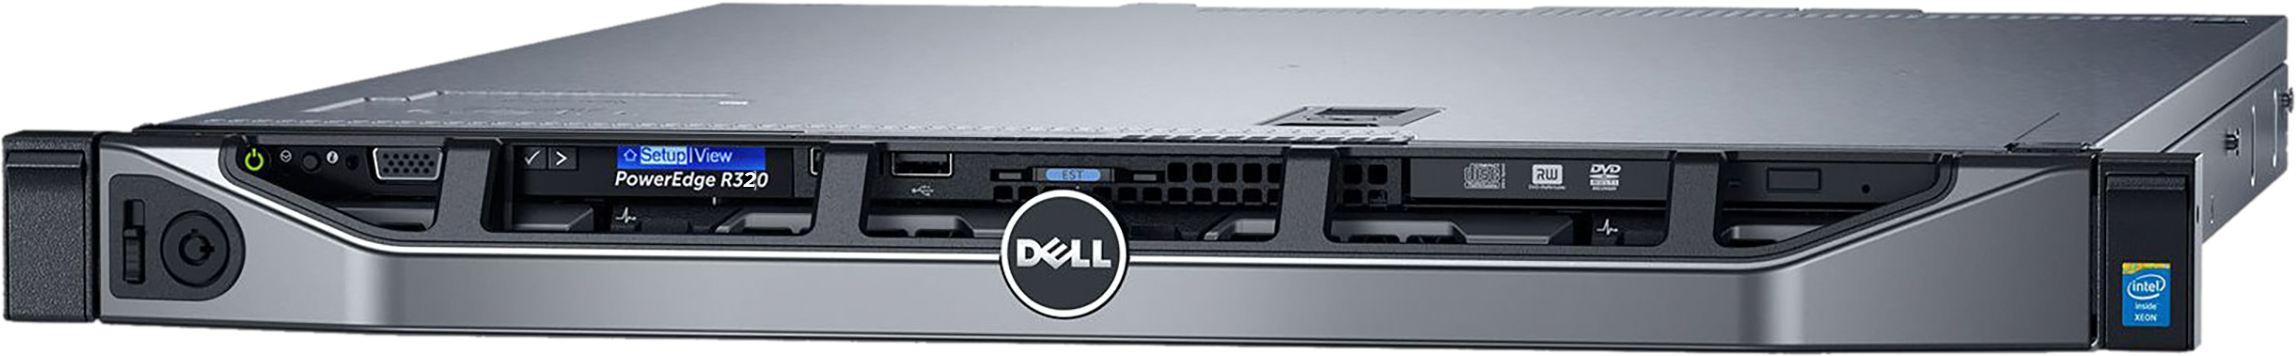 Аренда физического сервера DELL R320 / E5-2420 v2 / 8 GB RAM / 2 x 240 GB SSD / 2 x 1 TB HDD / H310